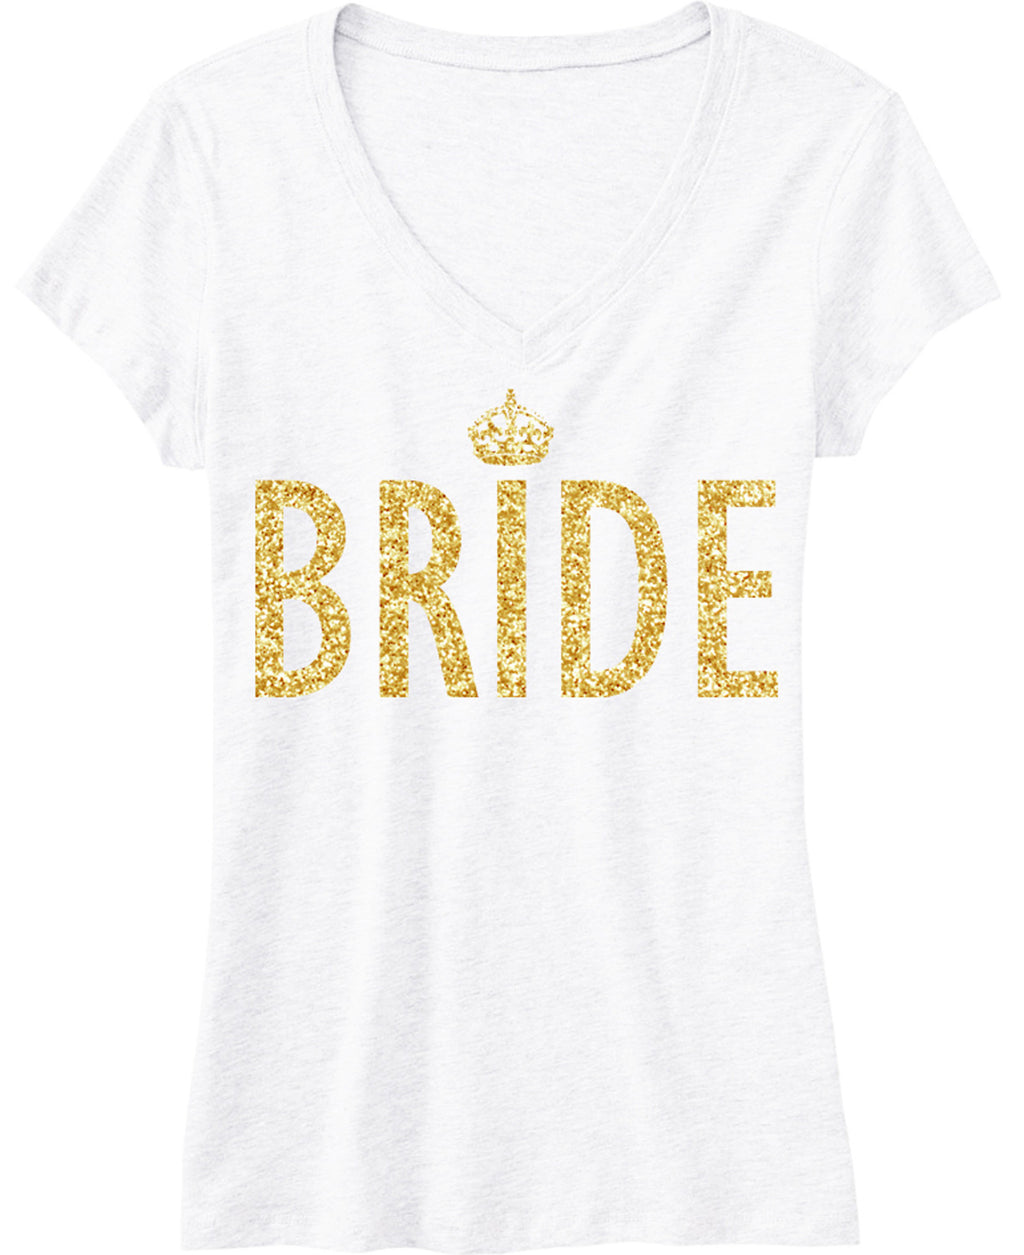 BRIDE Gold GLITTER SHIRT White V-neck